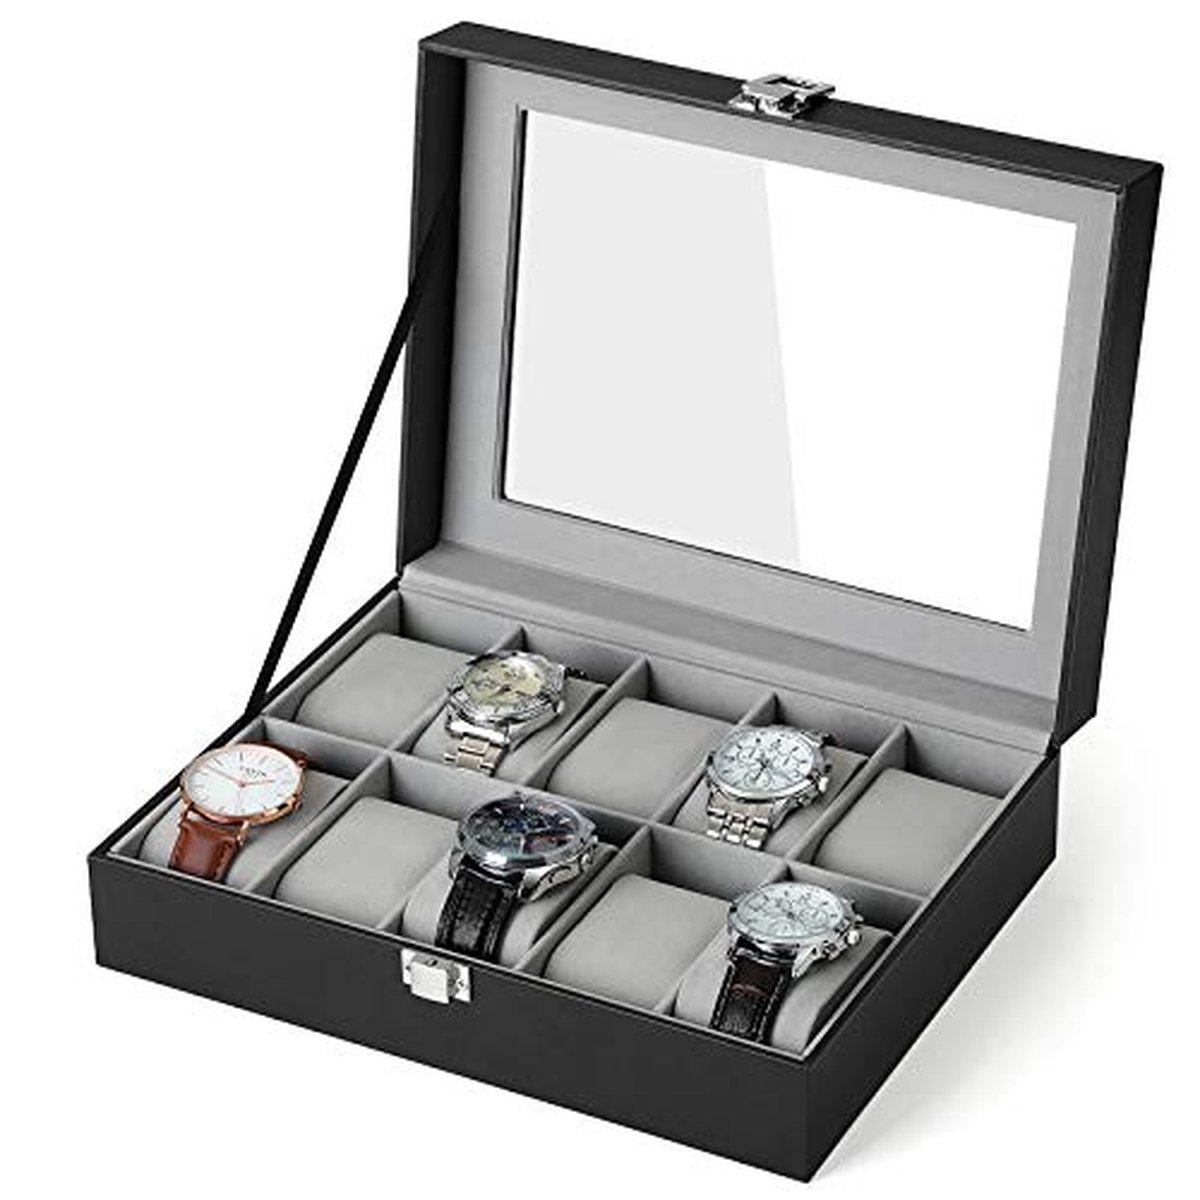 Trend24 Horlogedoos - Horloge doos - Horloge box - Horlogedoos heren - 25 x 20 x 7.5 cm - Zwart